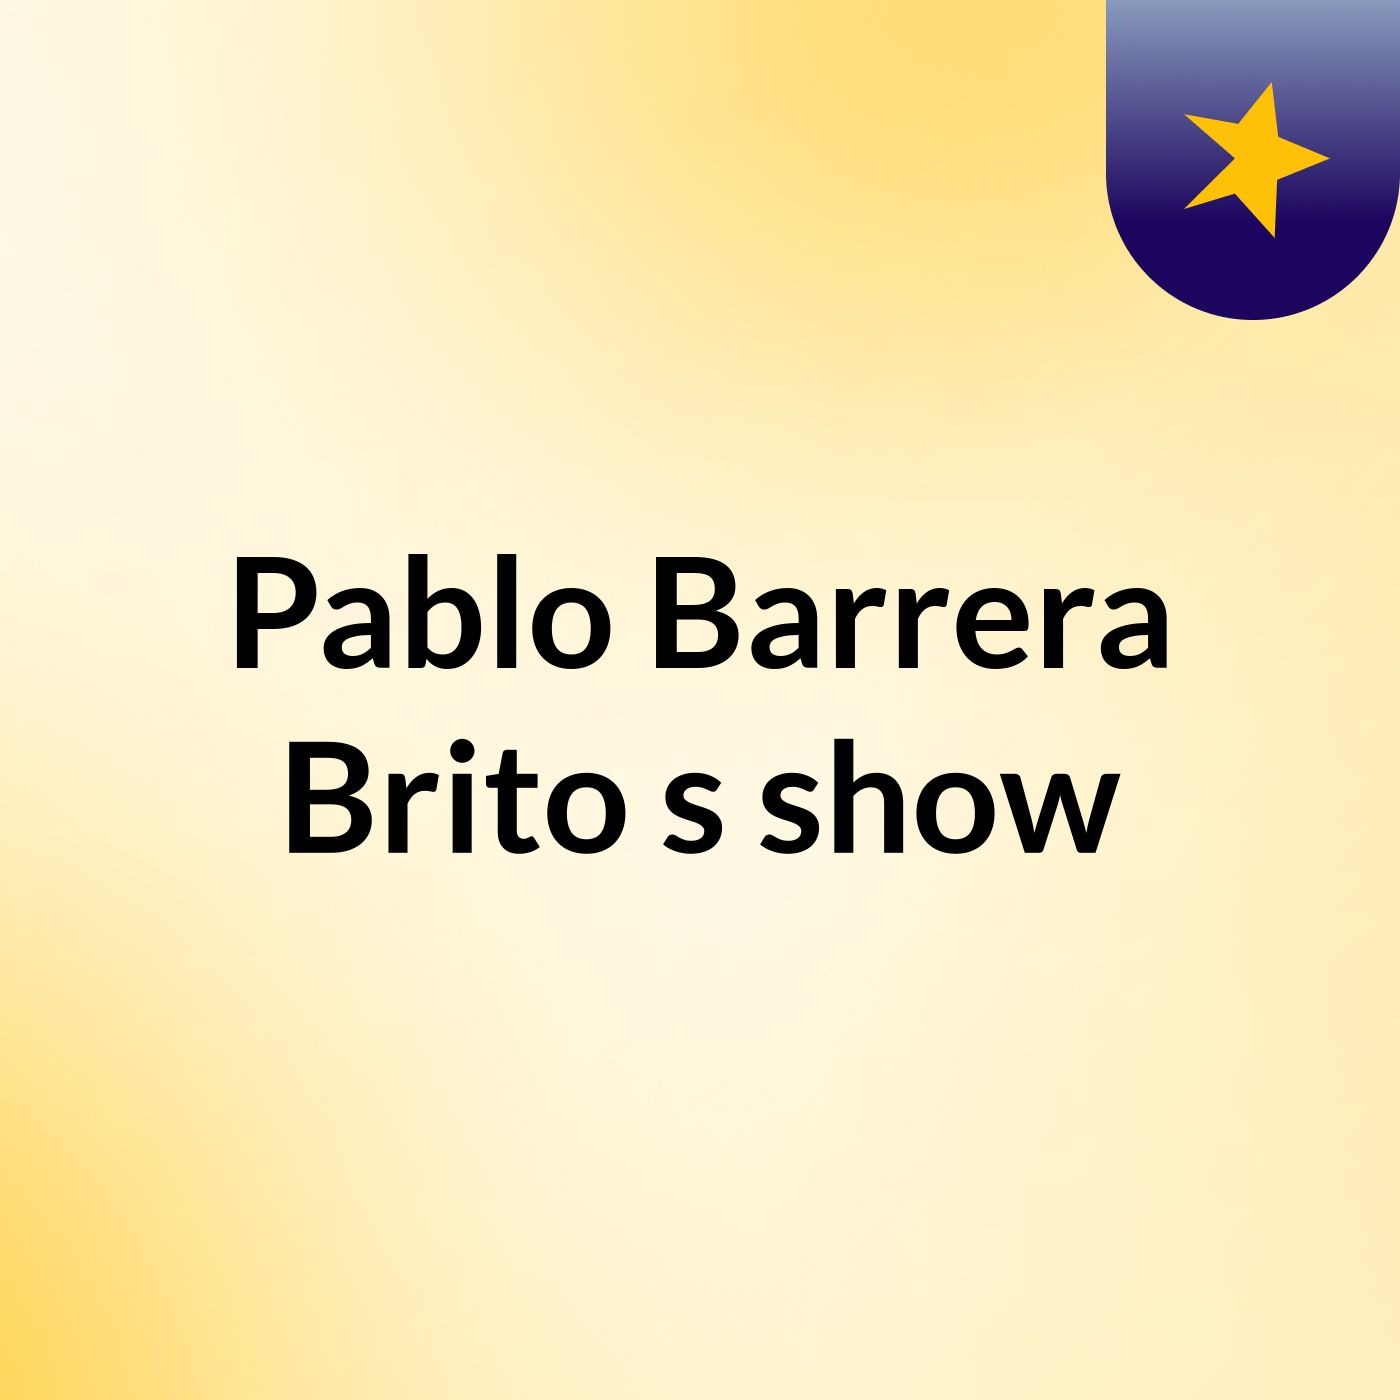 Pablo Barrera Brito's show